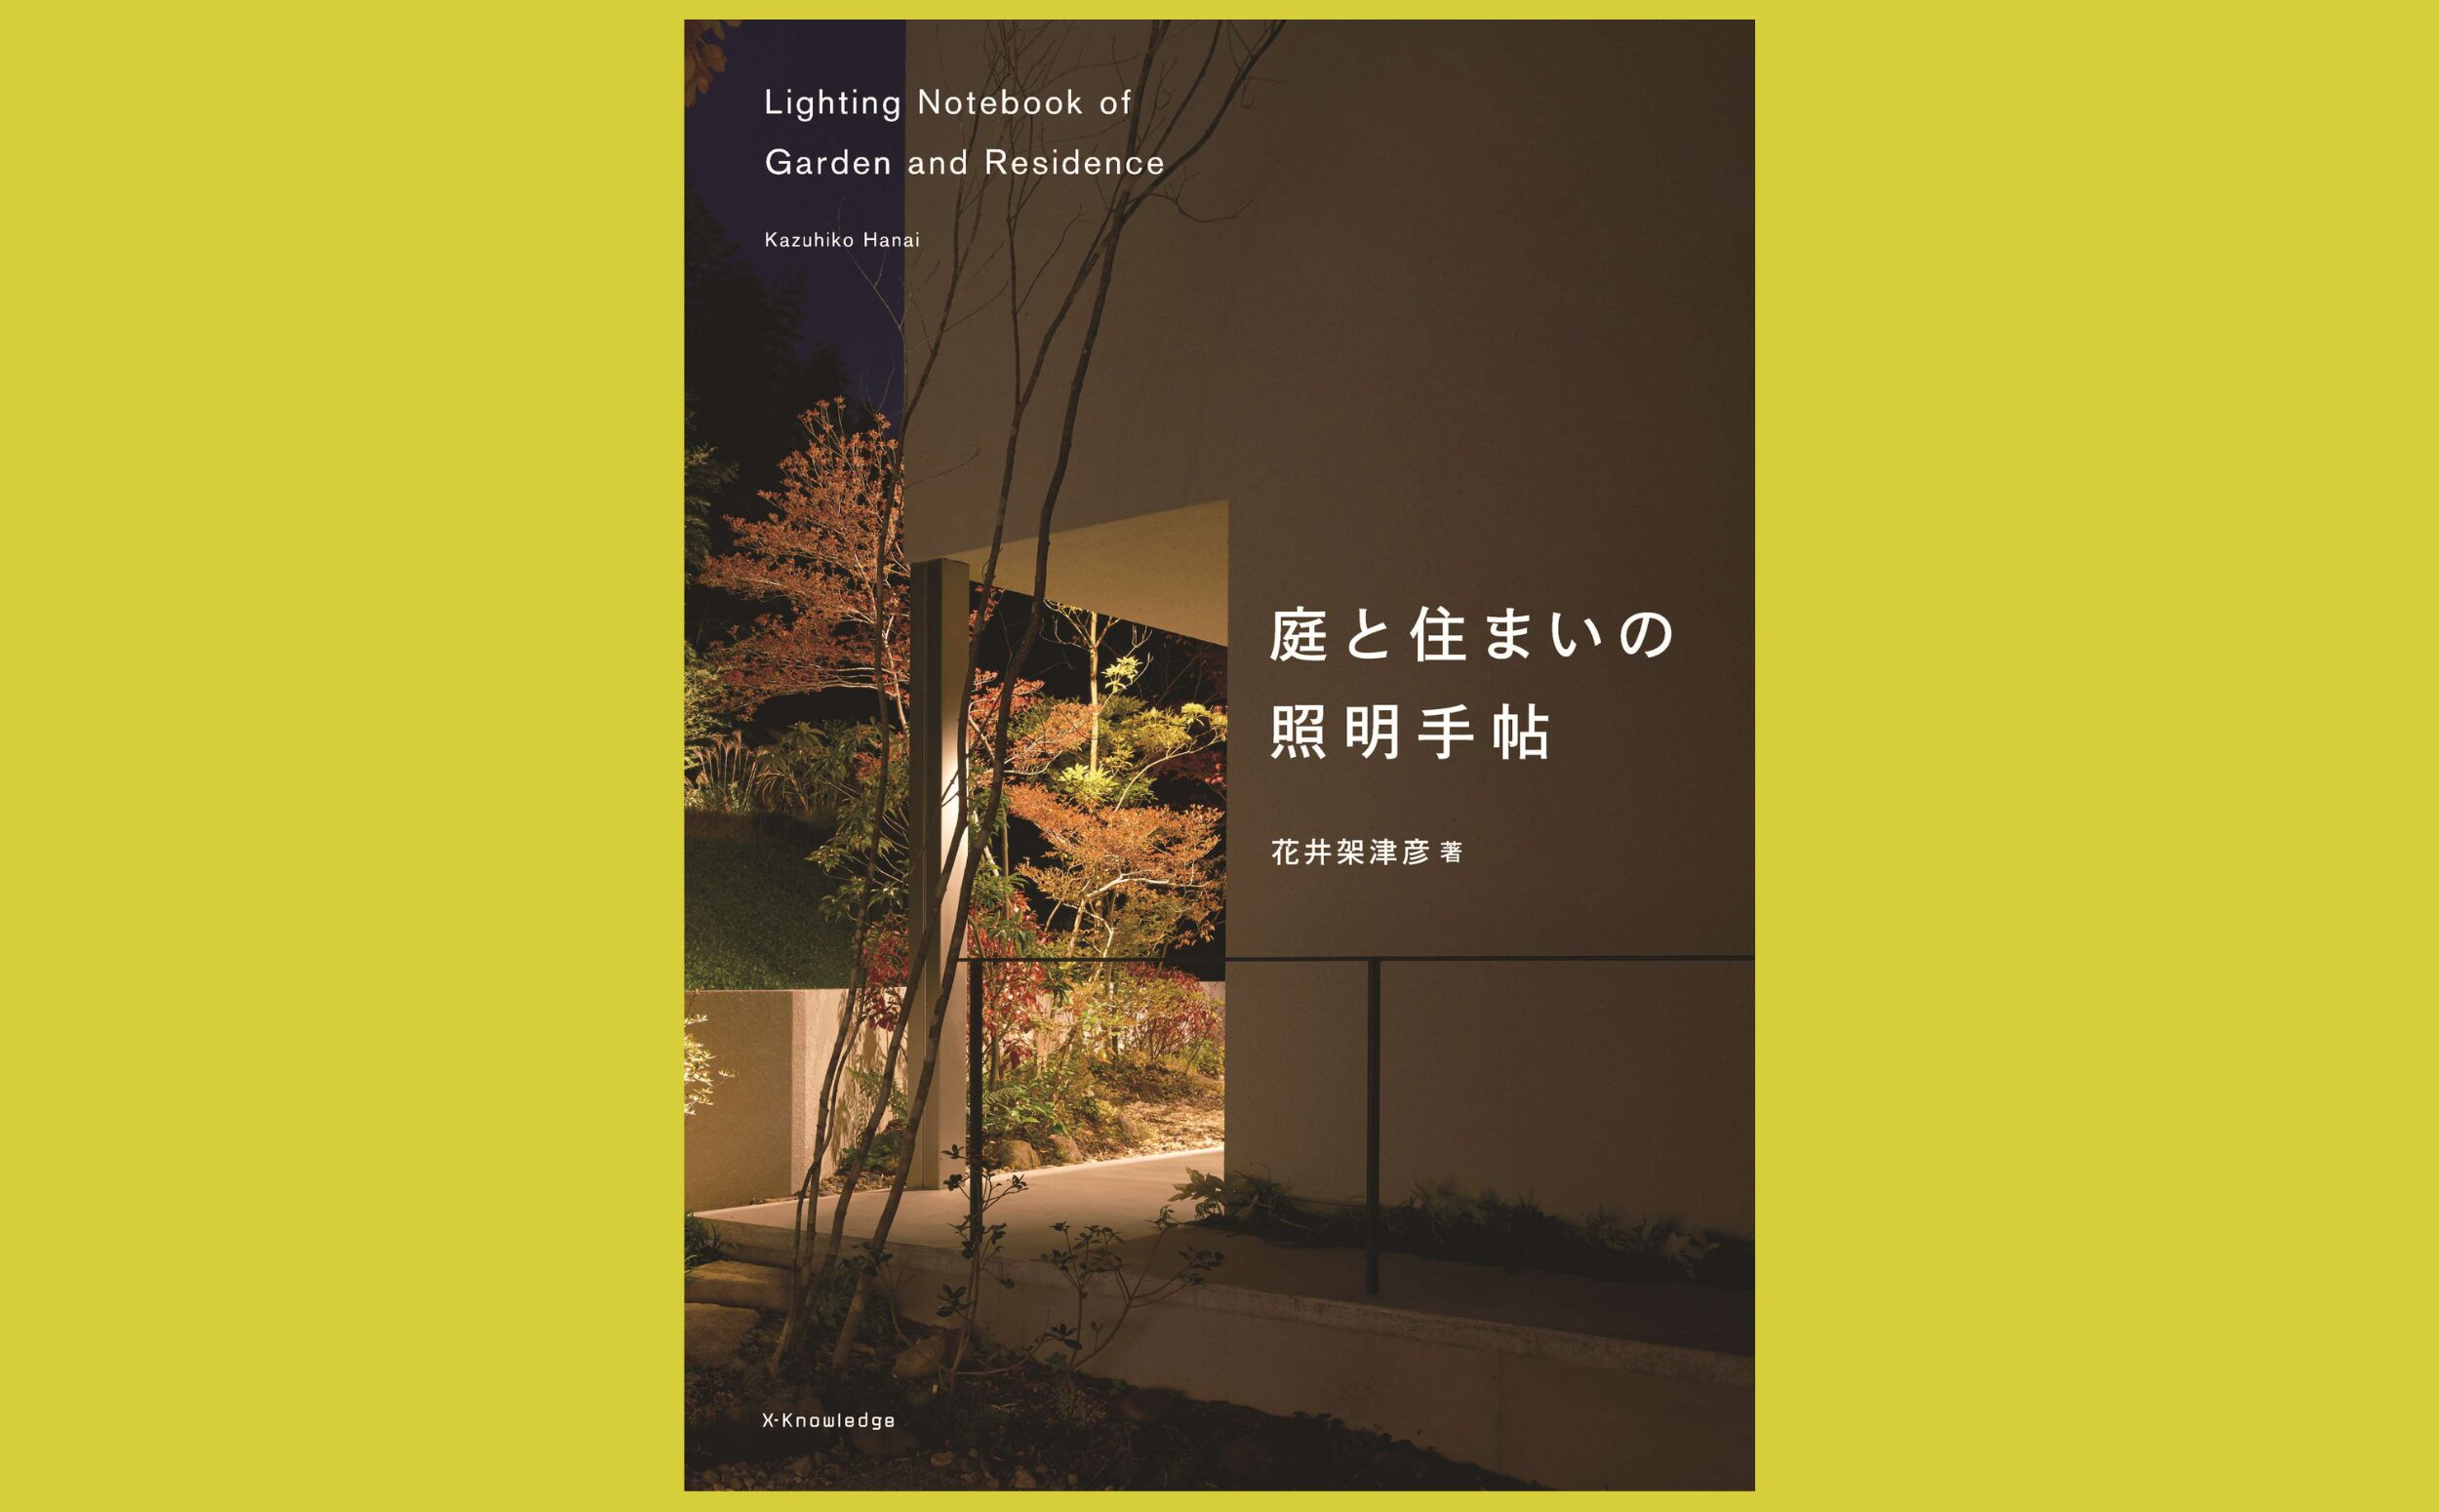 内と外をつなぎ、憩う実践的な照明事例集『庭と住まいの照明手帖』